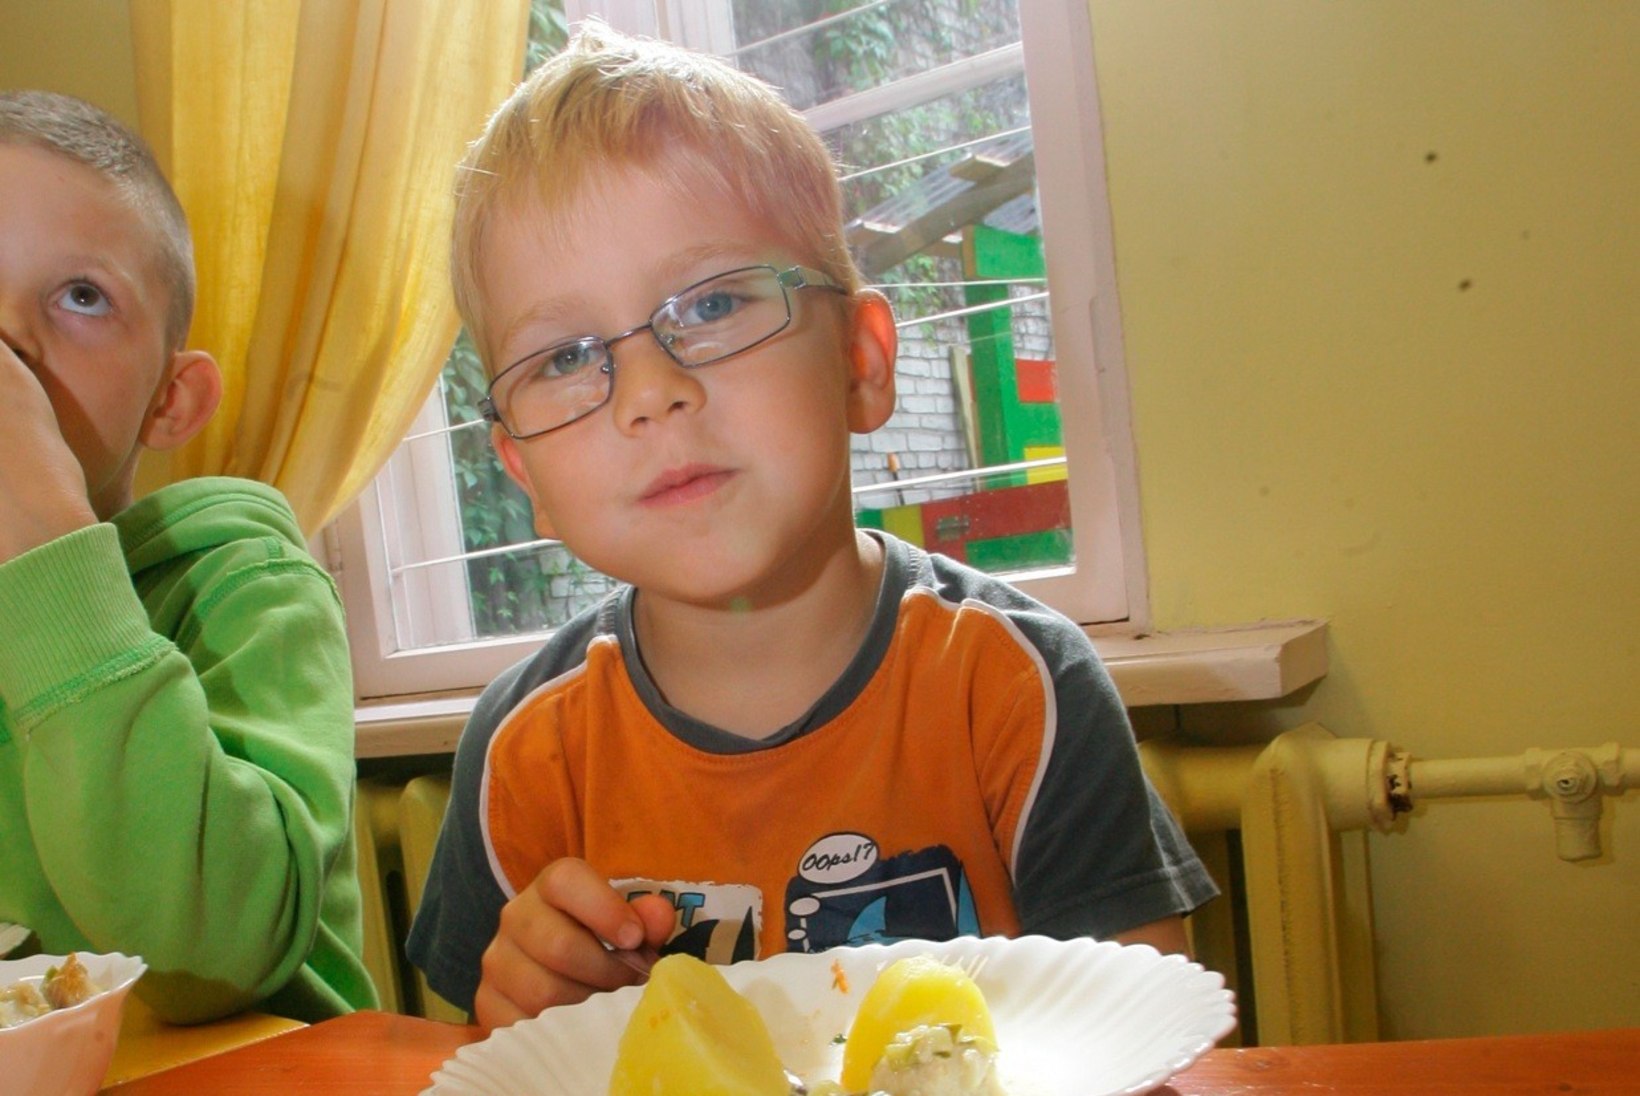 ENAM MITTE: teised lapsed Tallinna lasteaedades tasuta toitu ei saa